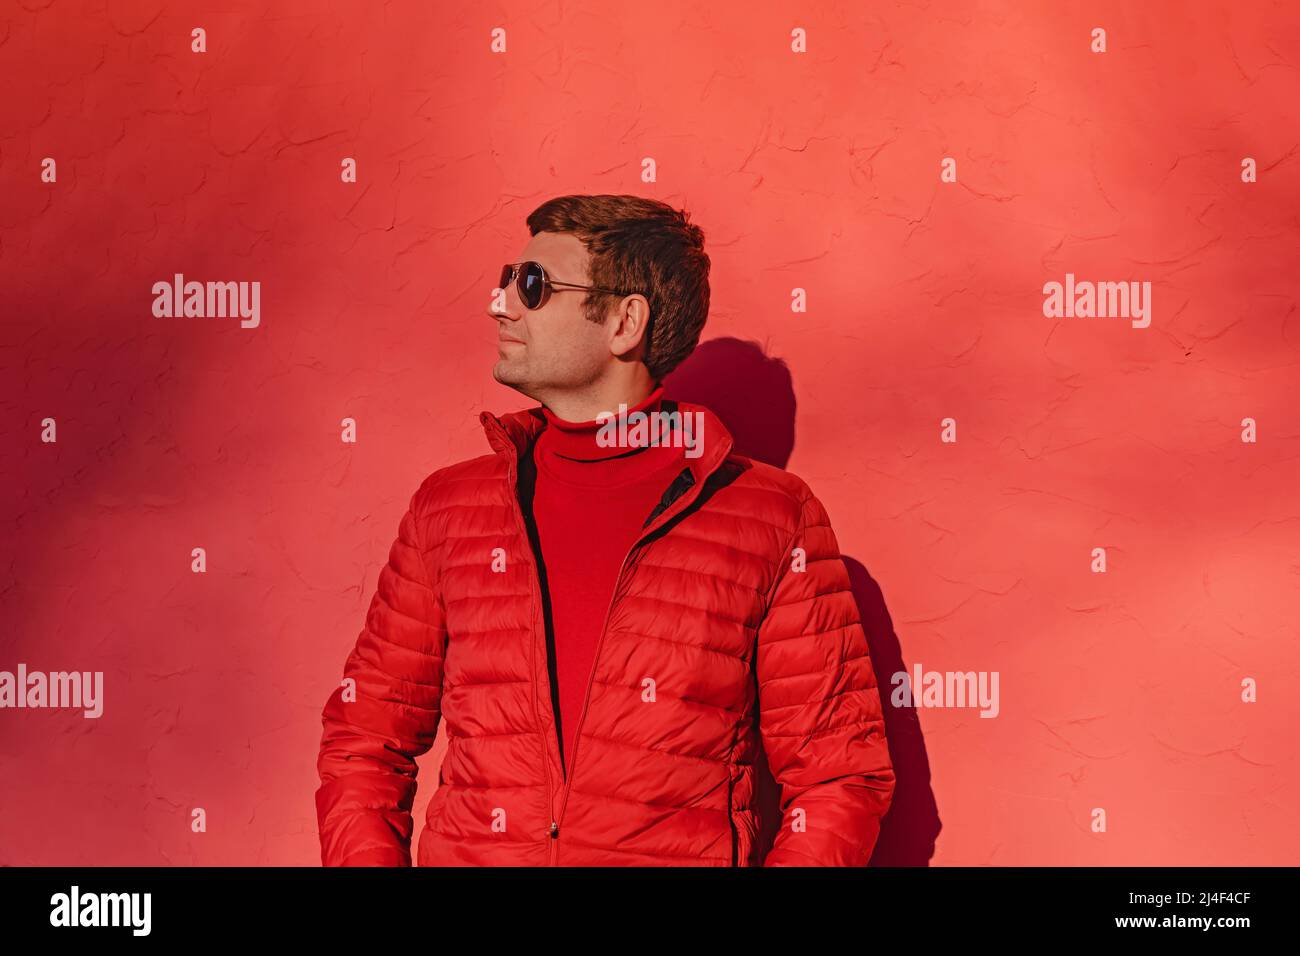 Junger Mann in rotem Pullover und Jacke in der Nähe der roten Wand  Stockfotografie - Alamy